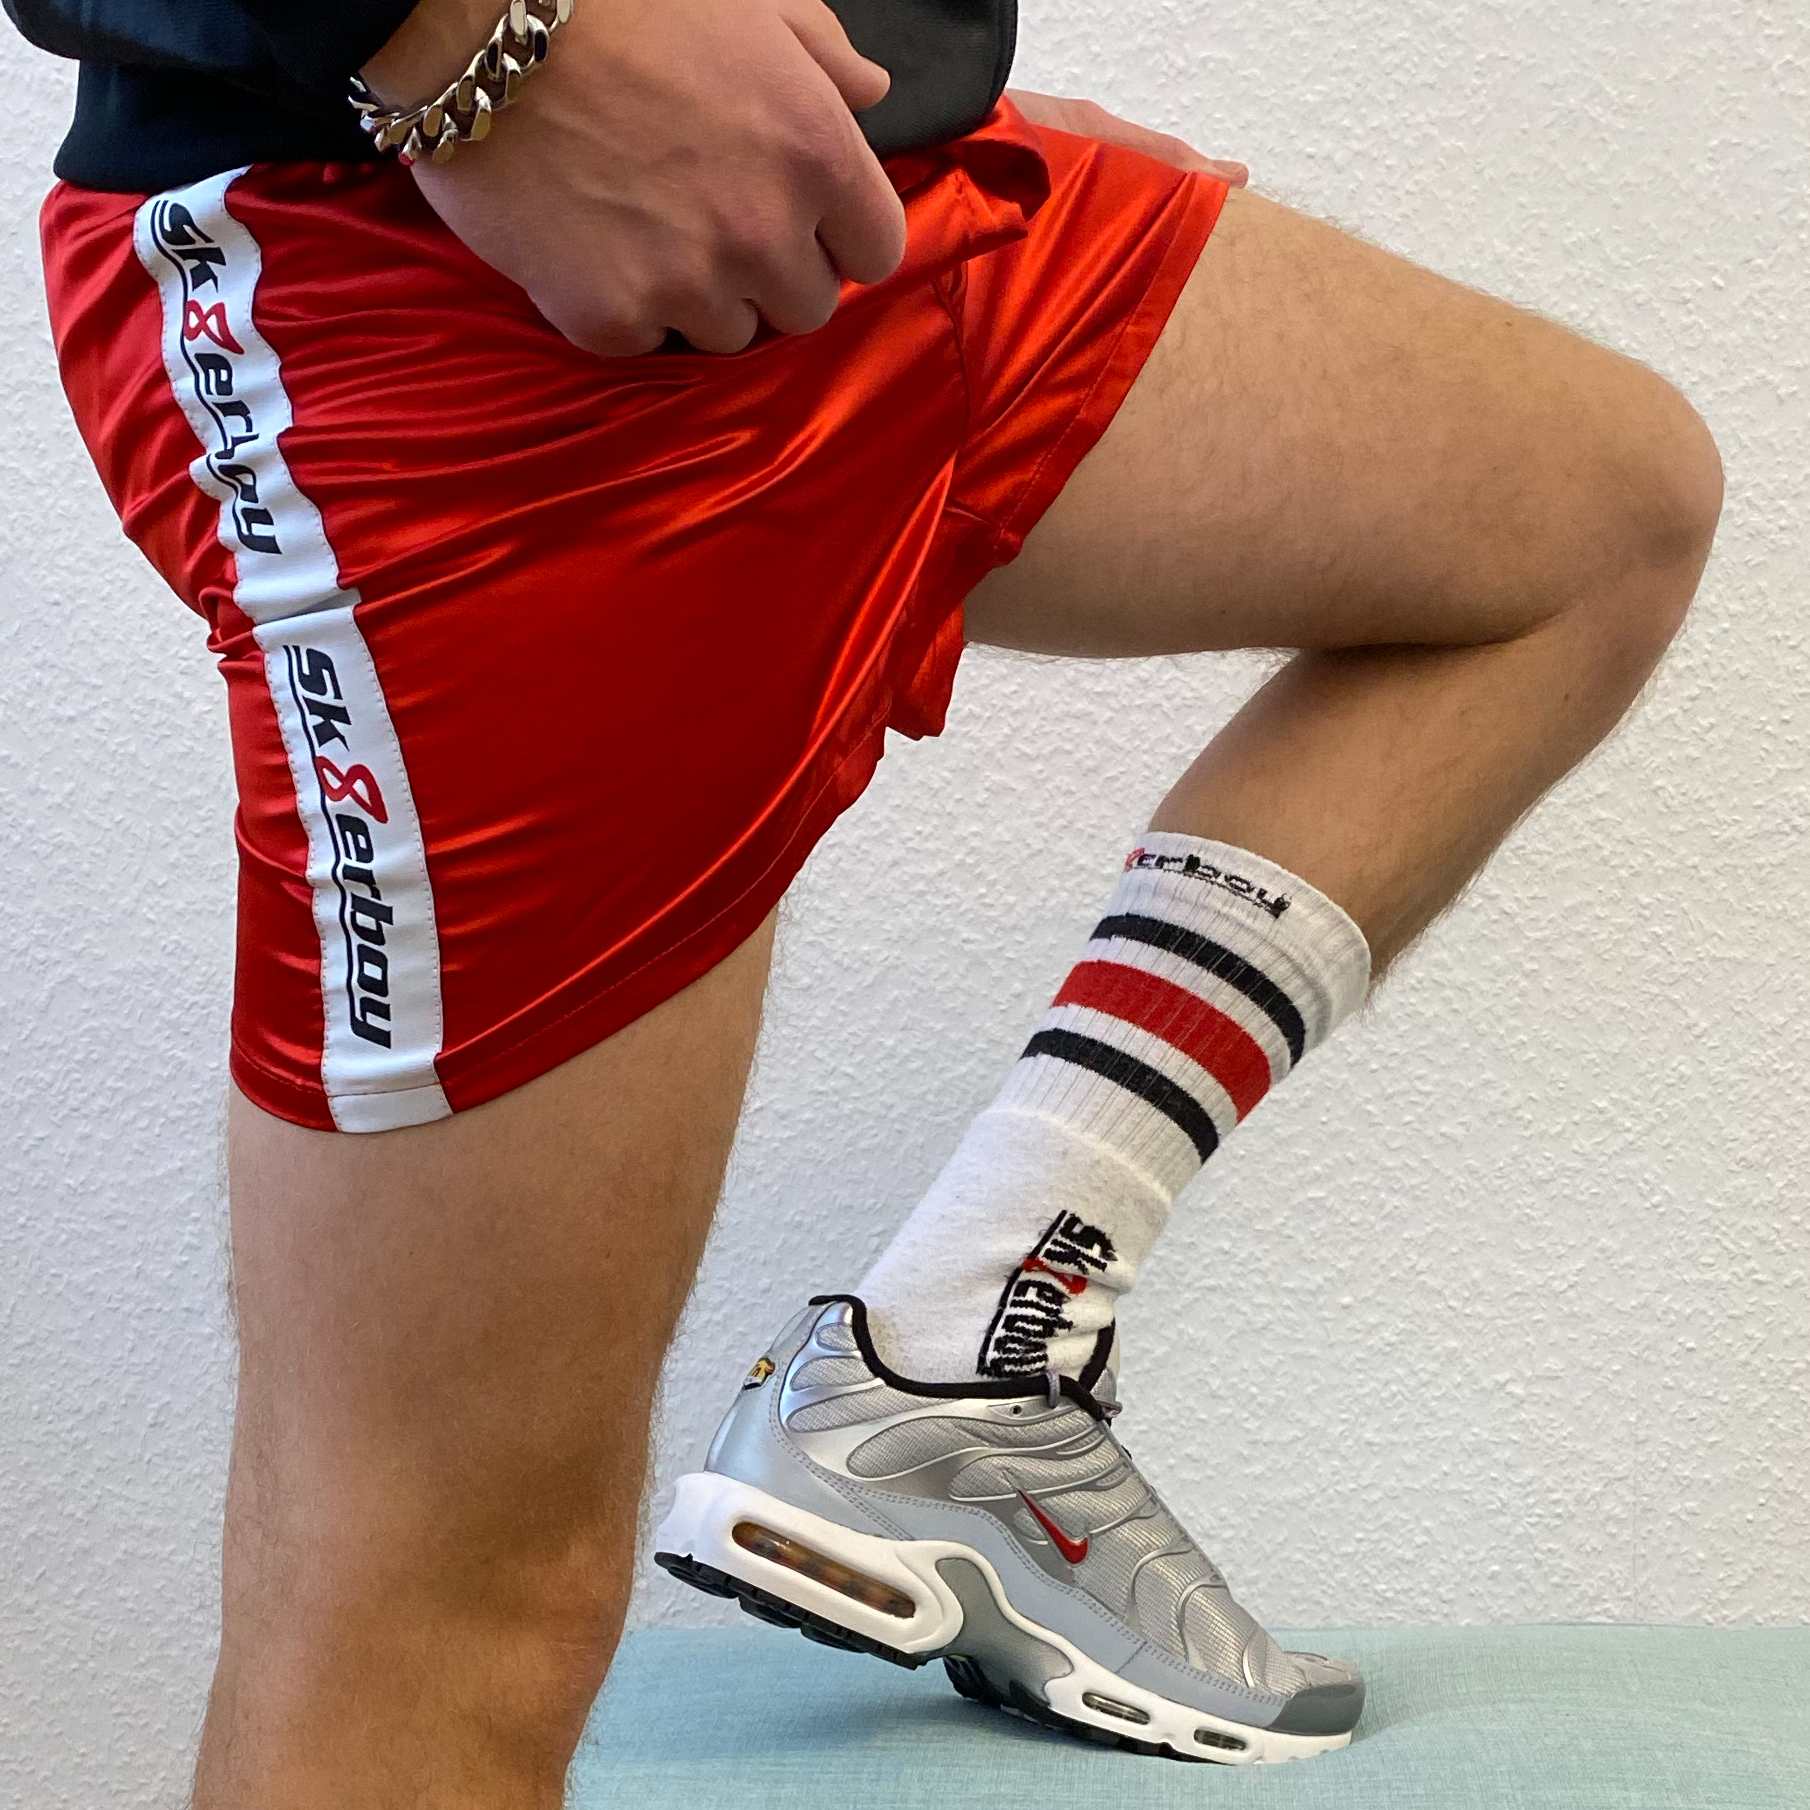 sportlicher typ mit nike tn sneaker in silver und sk8erboy tube socks zeigt seine beine und traegt eine rote boxer short in shiny red mit dicker armkette und shiny jacket